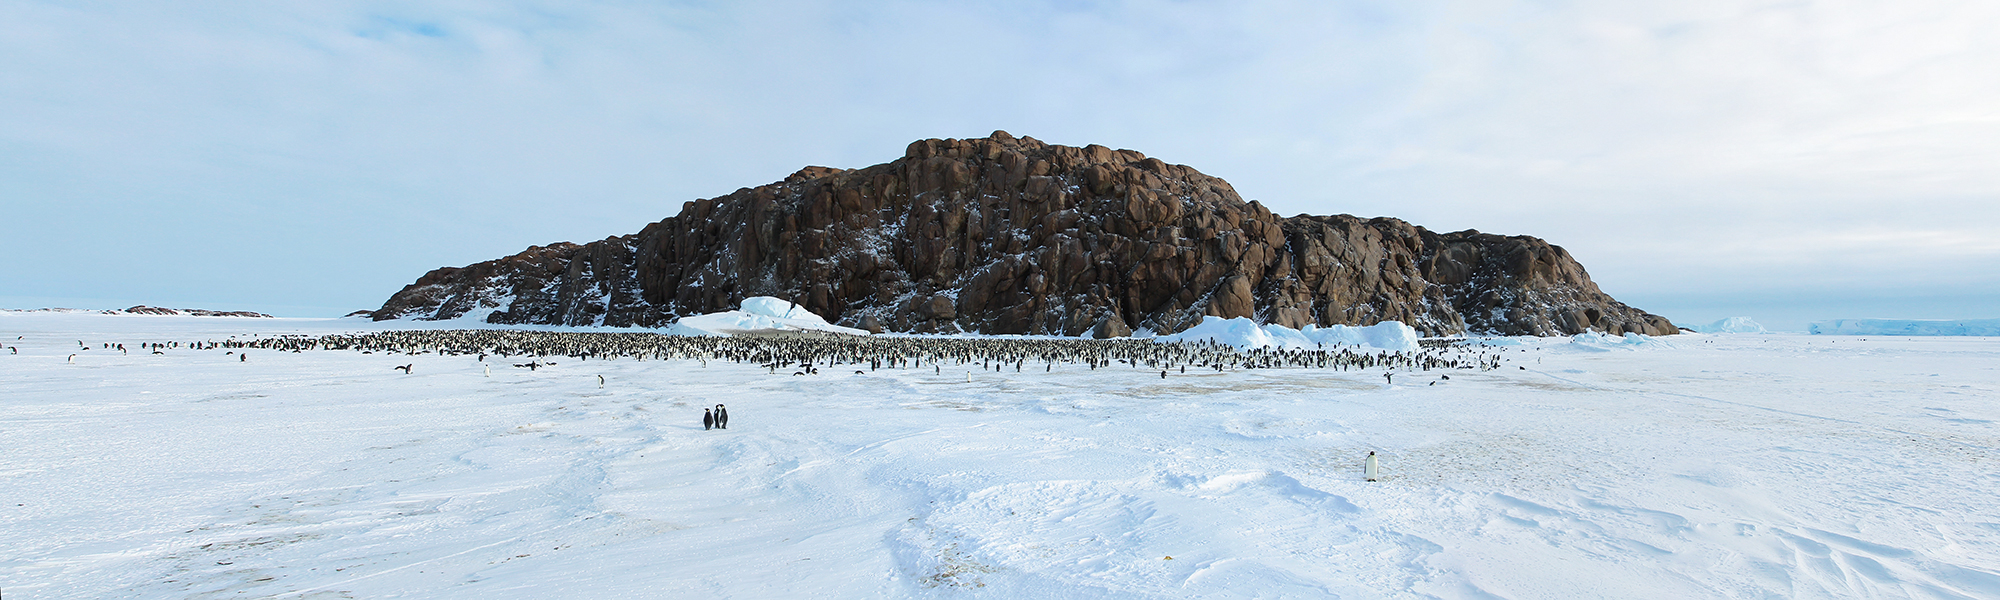 Croisière et voile Péninsule antarctique © Sergey / Adobe Stock